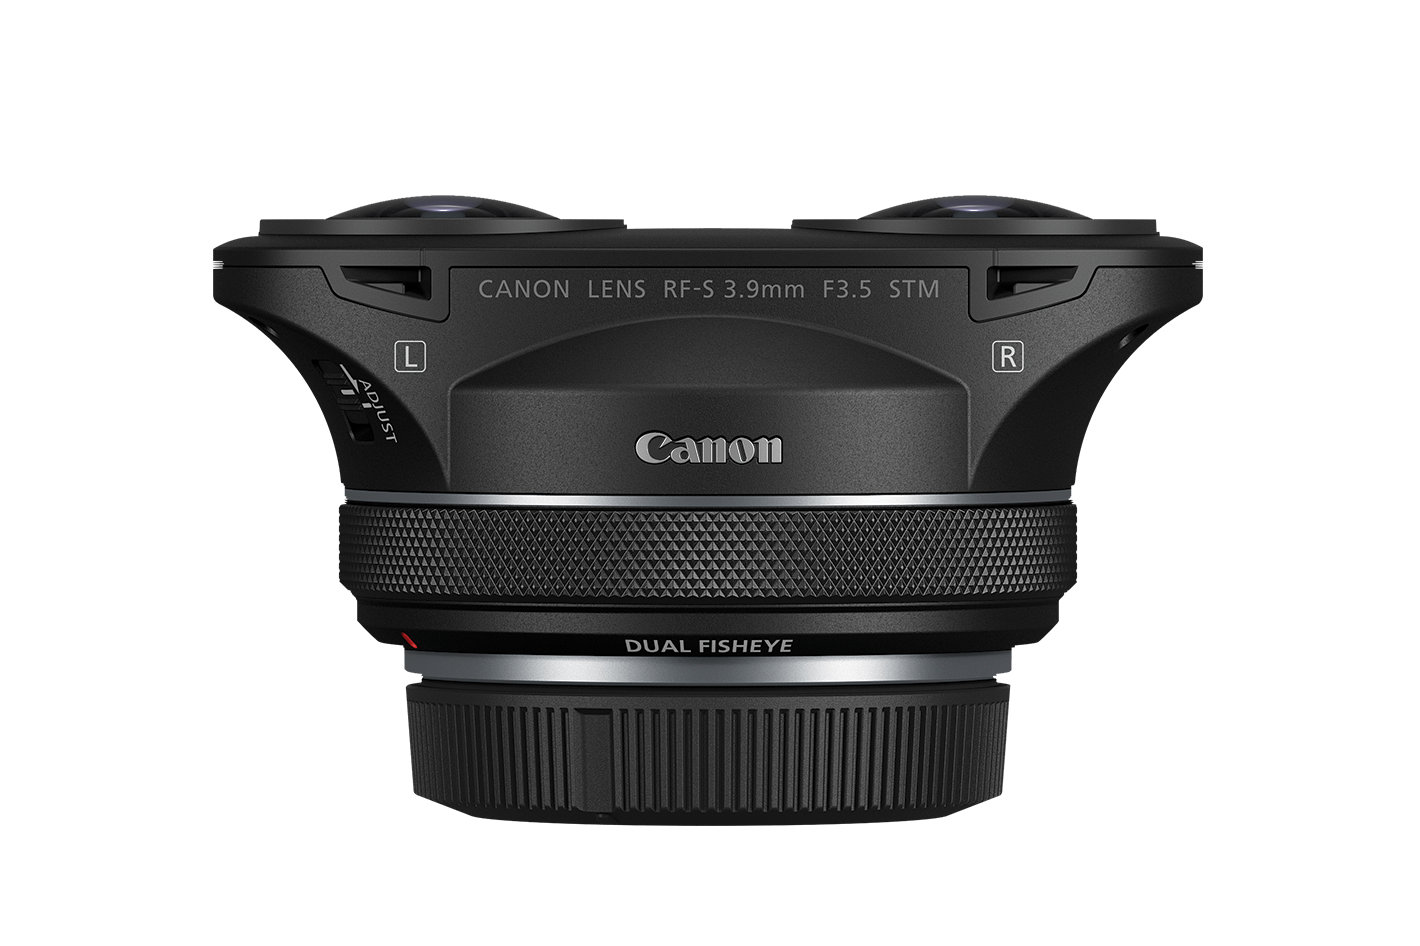 New lens for VR: Canon RF-S3.9mm F3.5 STM Dual Fisheye